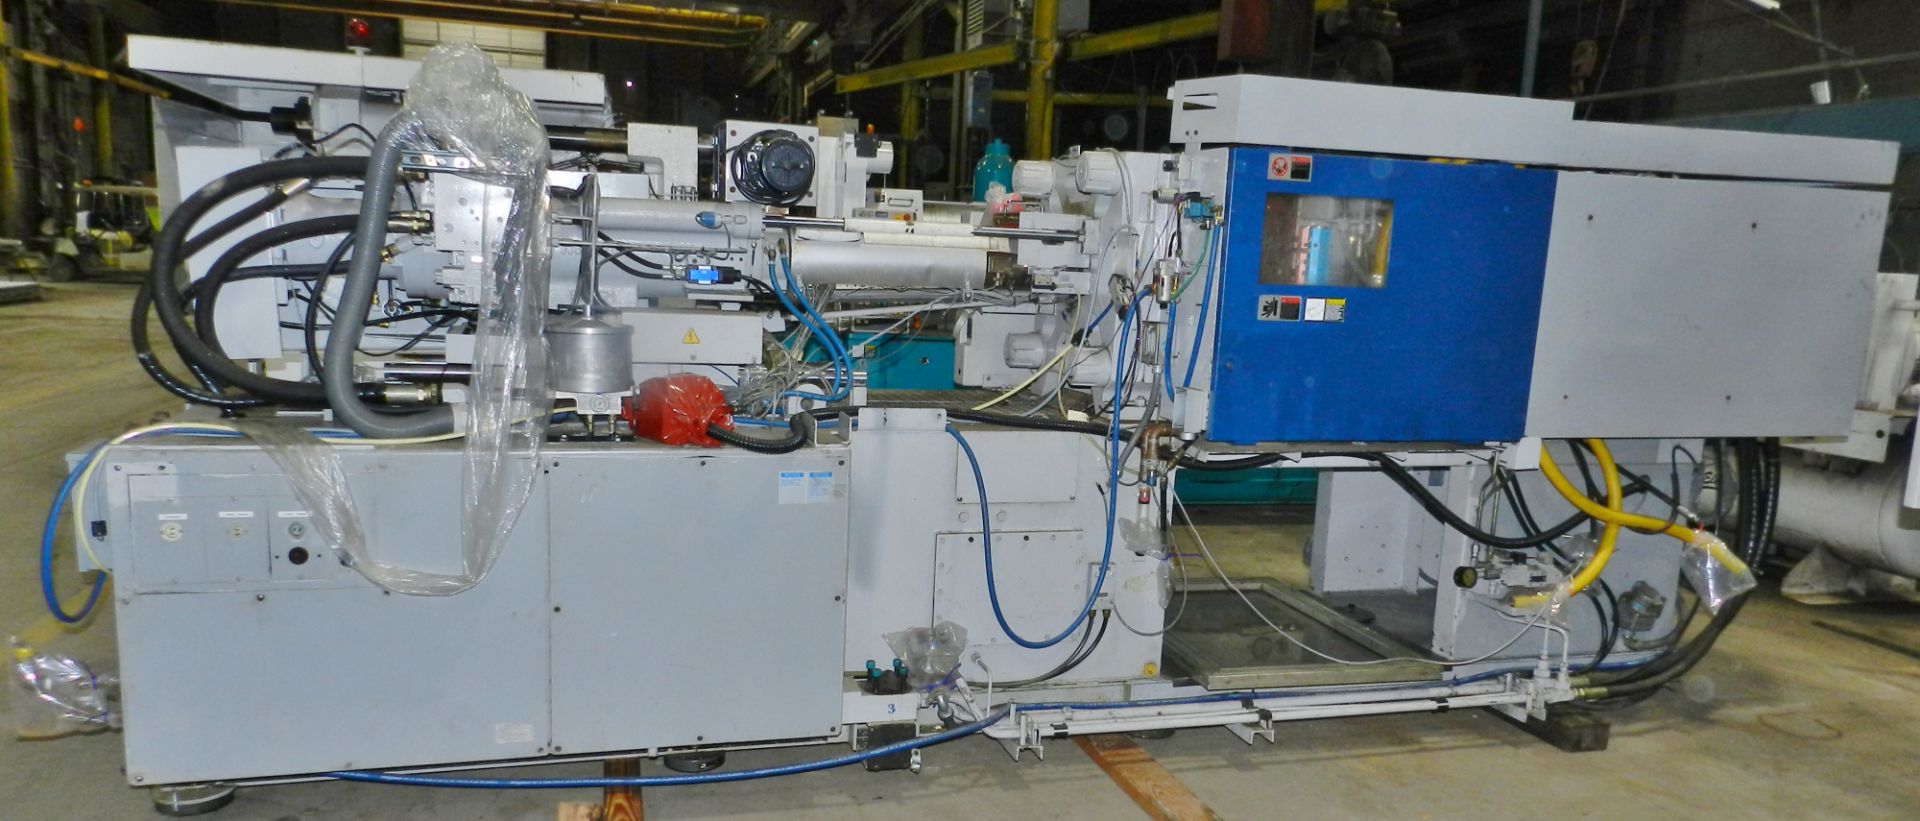 Sumitomo 125 Ton Injection Molding Machine - Image 3 of 6